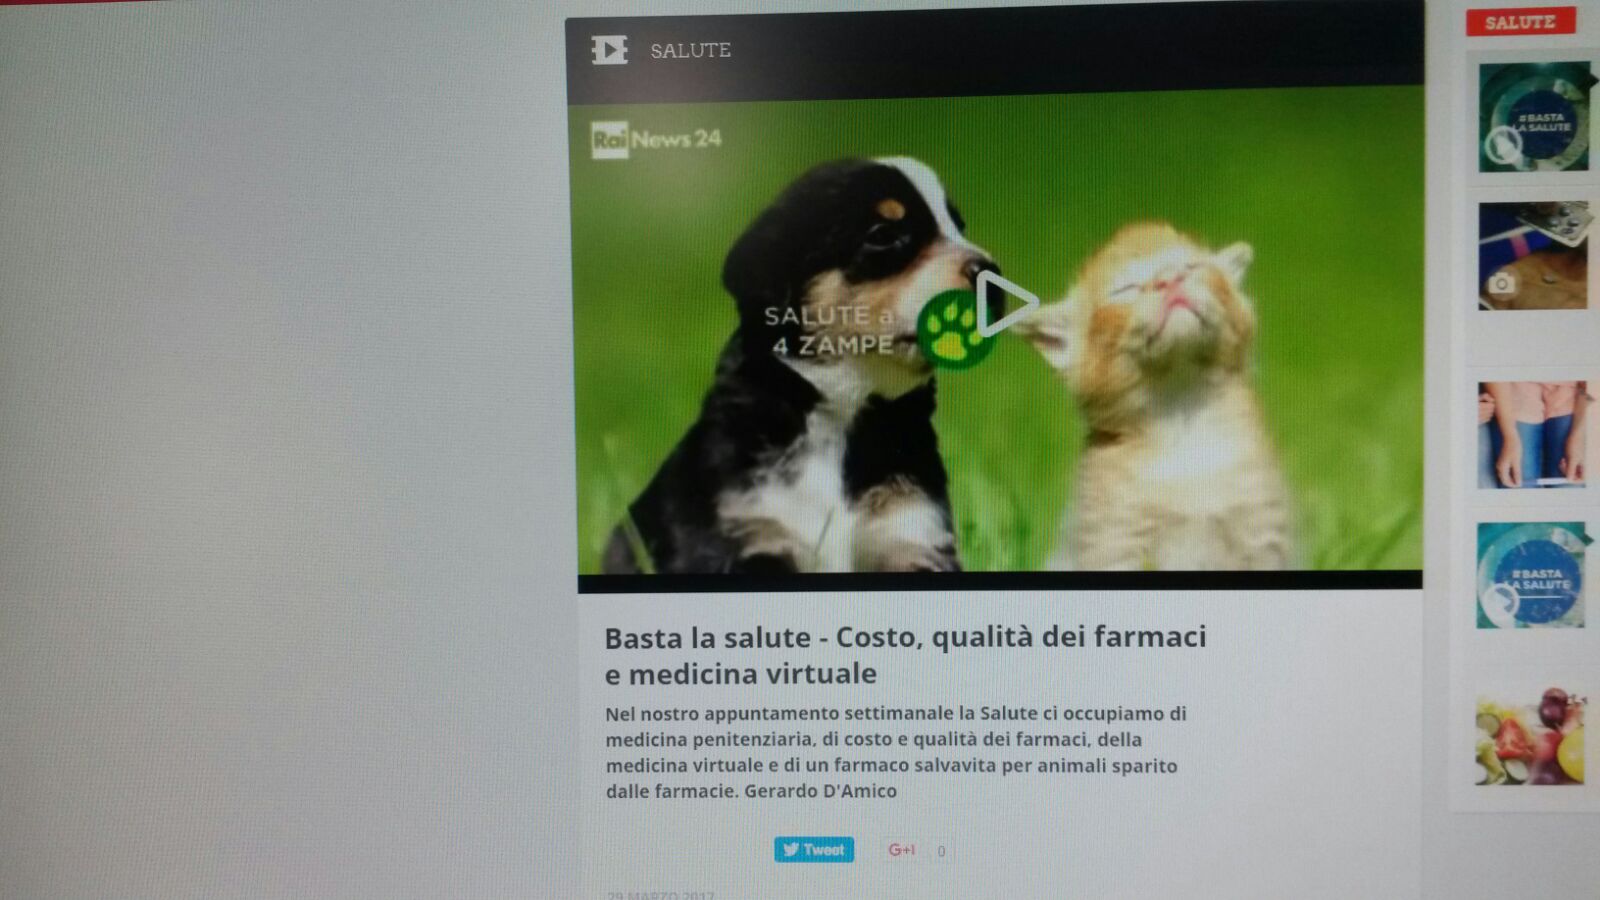 SIVELP a Rai NEWS “Basta la salute” di GERARDO D’AMICO: Liberalizziamo il farmaco veterinario (A MINUTI 12.38)